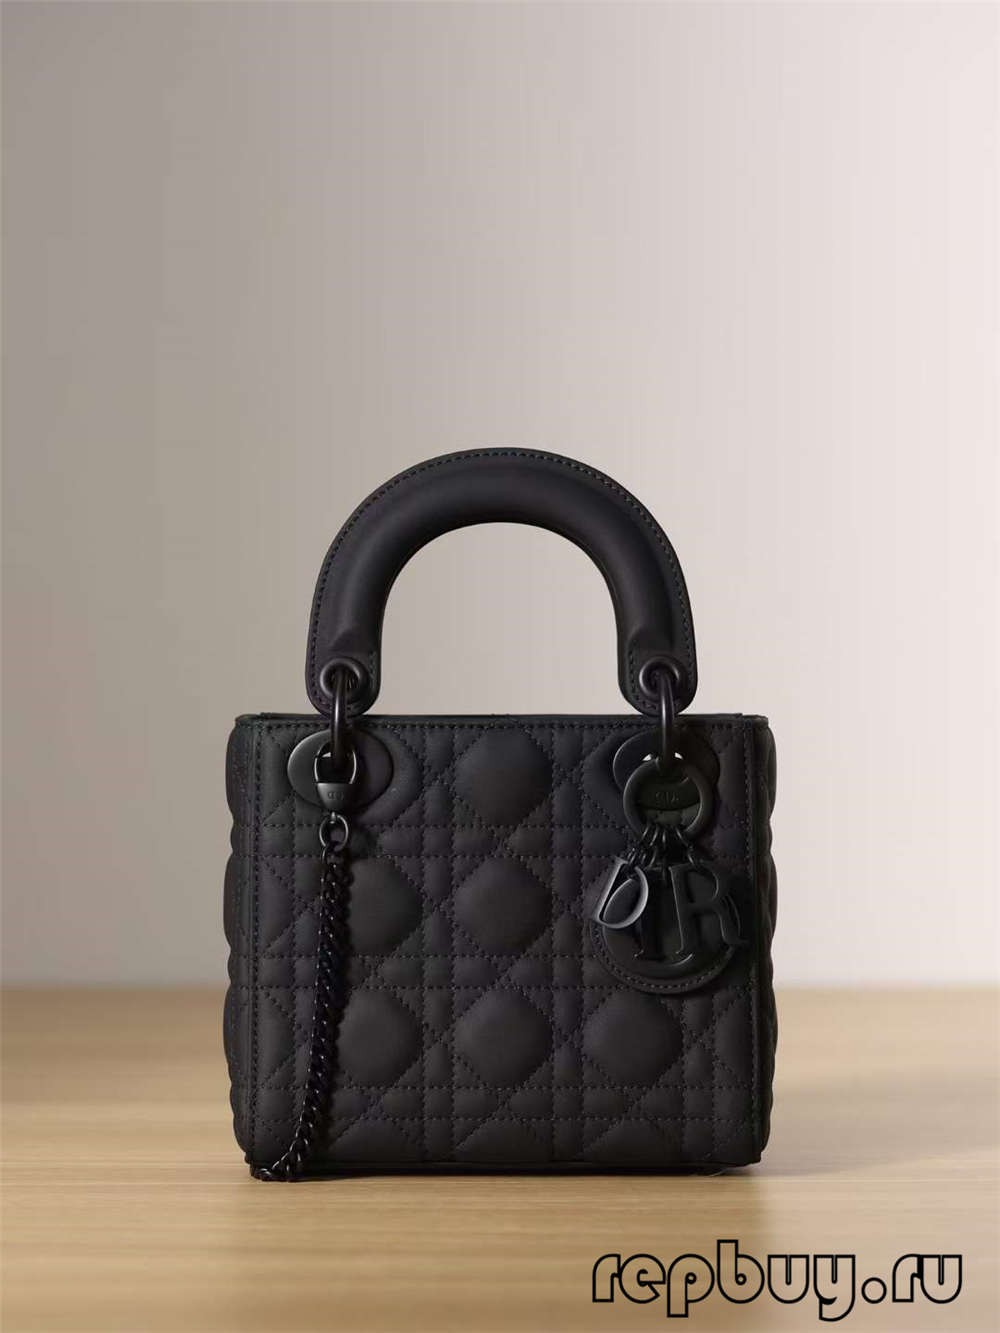 LADY DIOR Mini Black Top Replica Handbag Matte Cowhide (2022 Special)-Best Quality Fake designer Bag Review, Replica designer bag ru